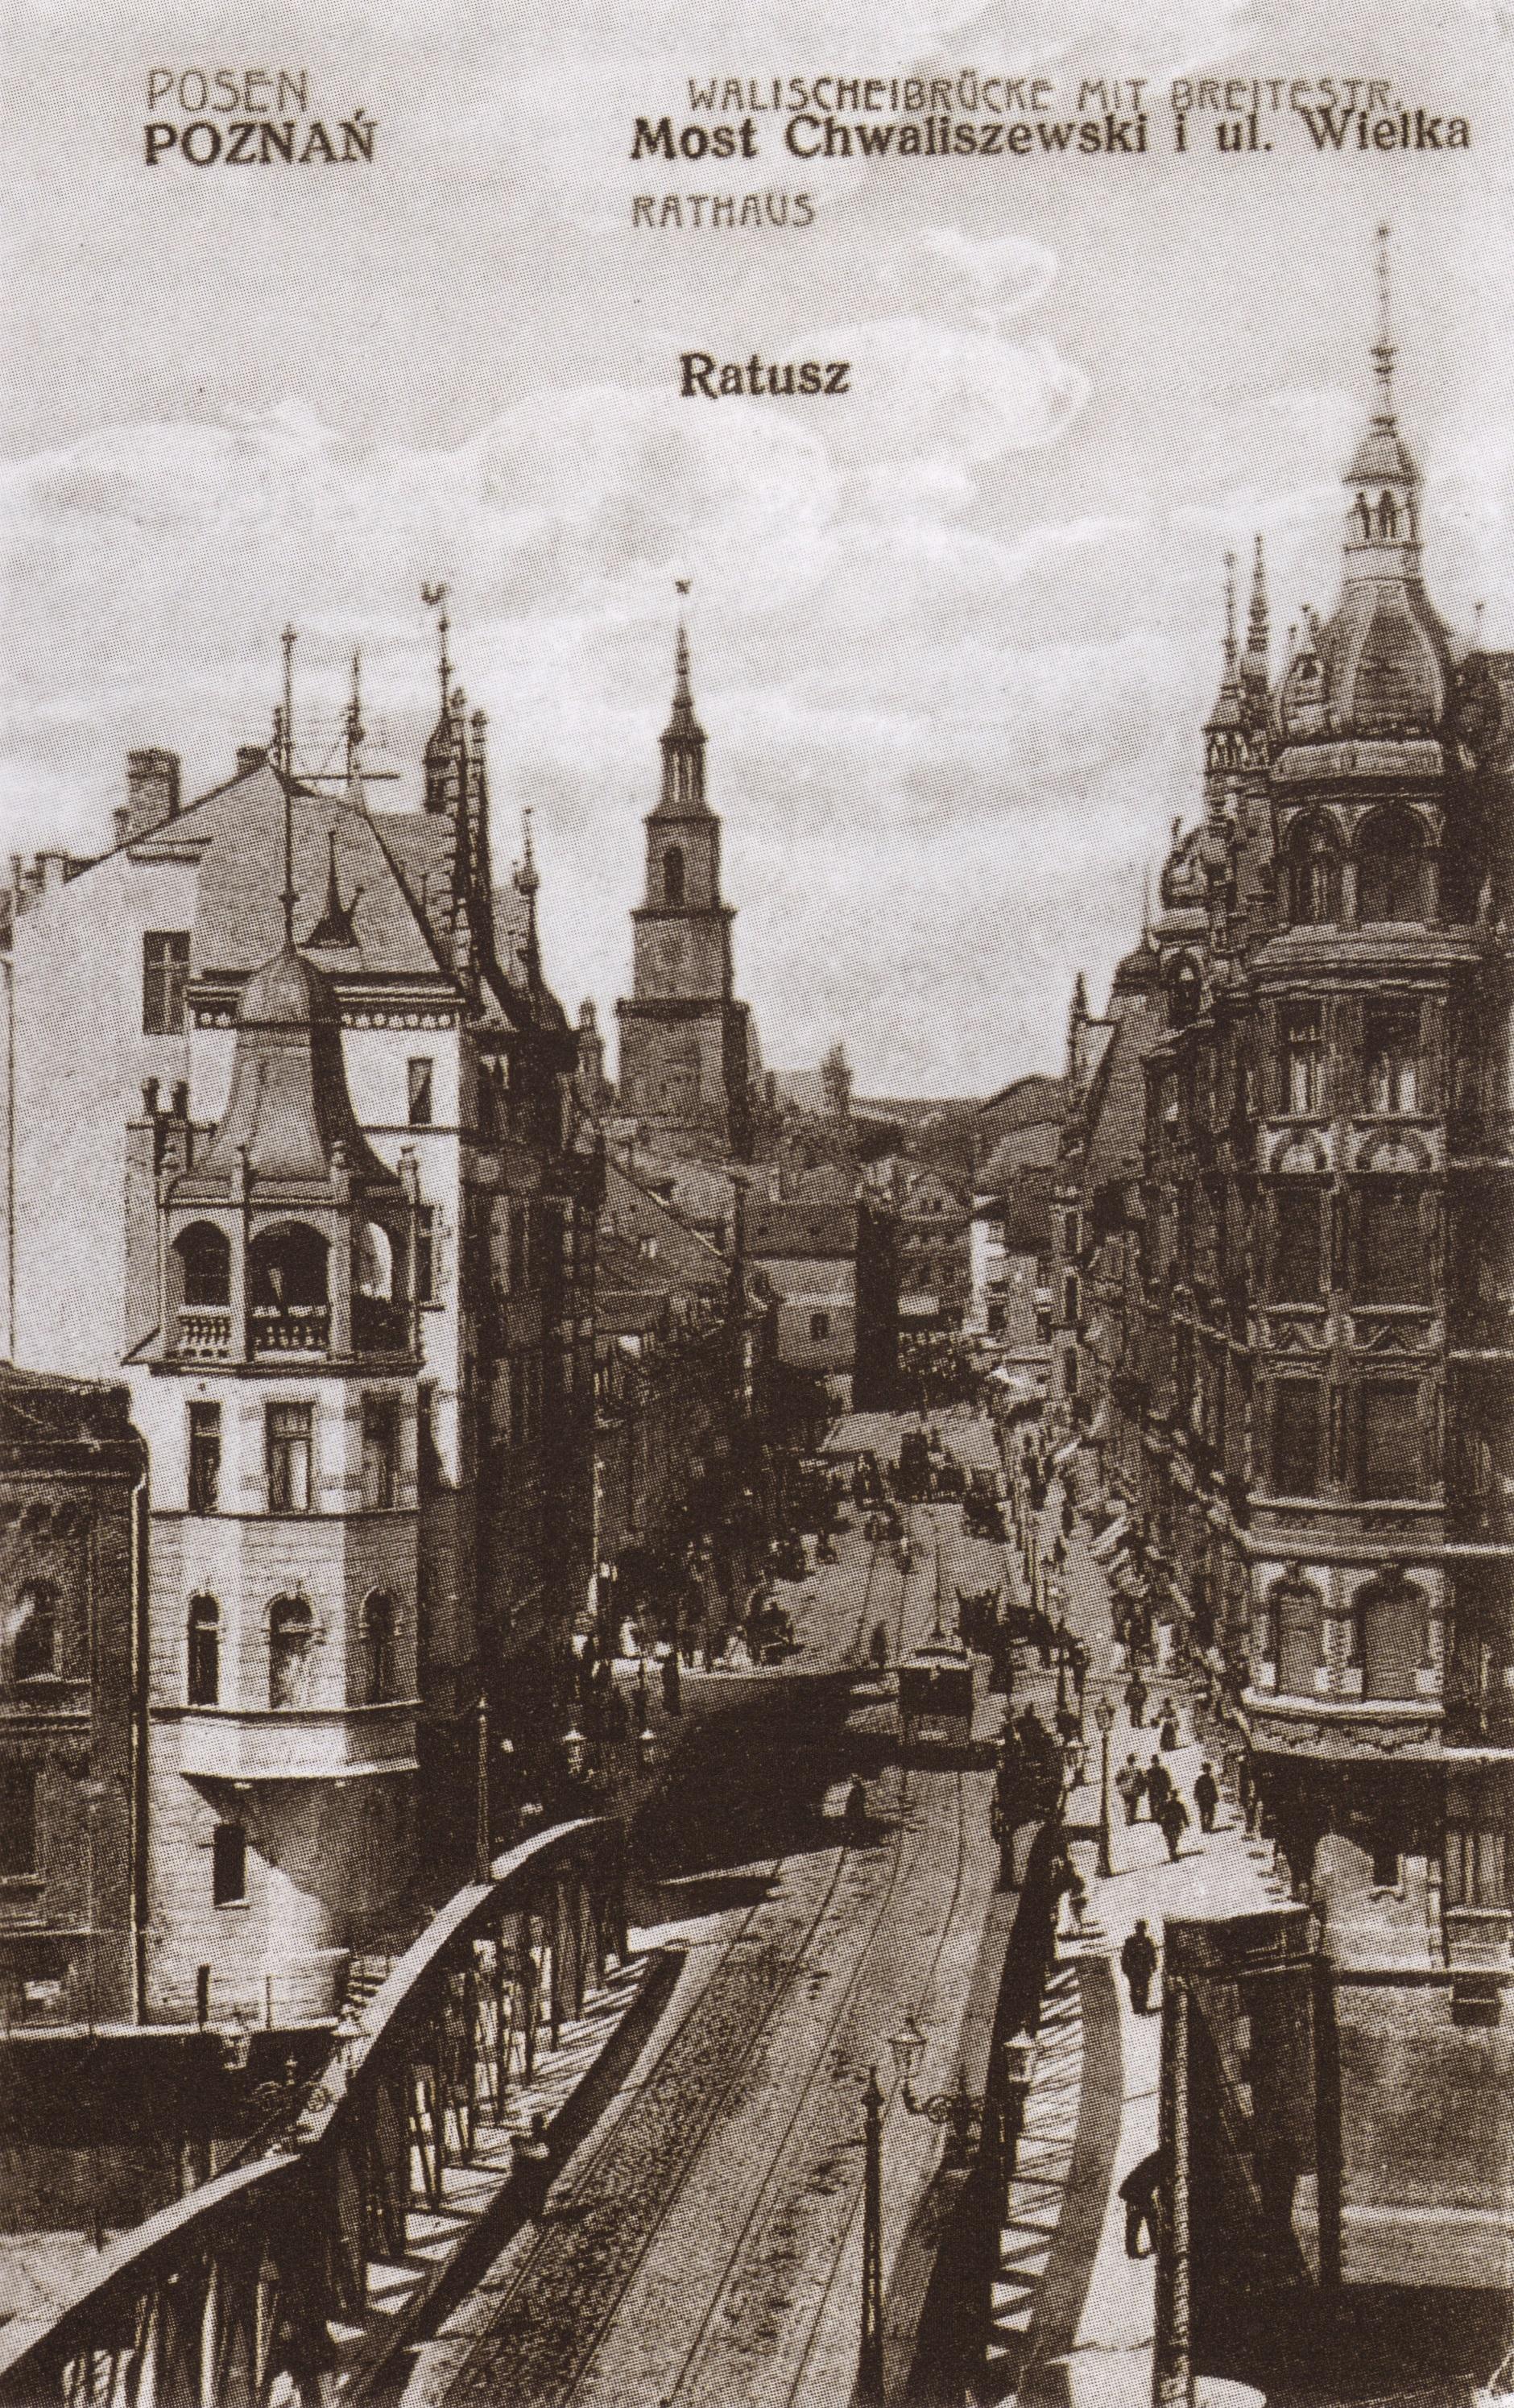 (1907) Most Chwaliszewski i ul. Wielka, w głębi wieża Ratusza.